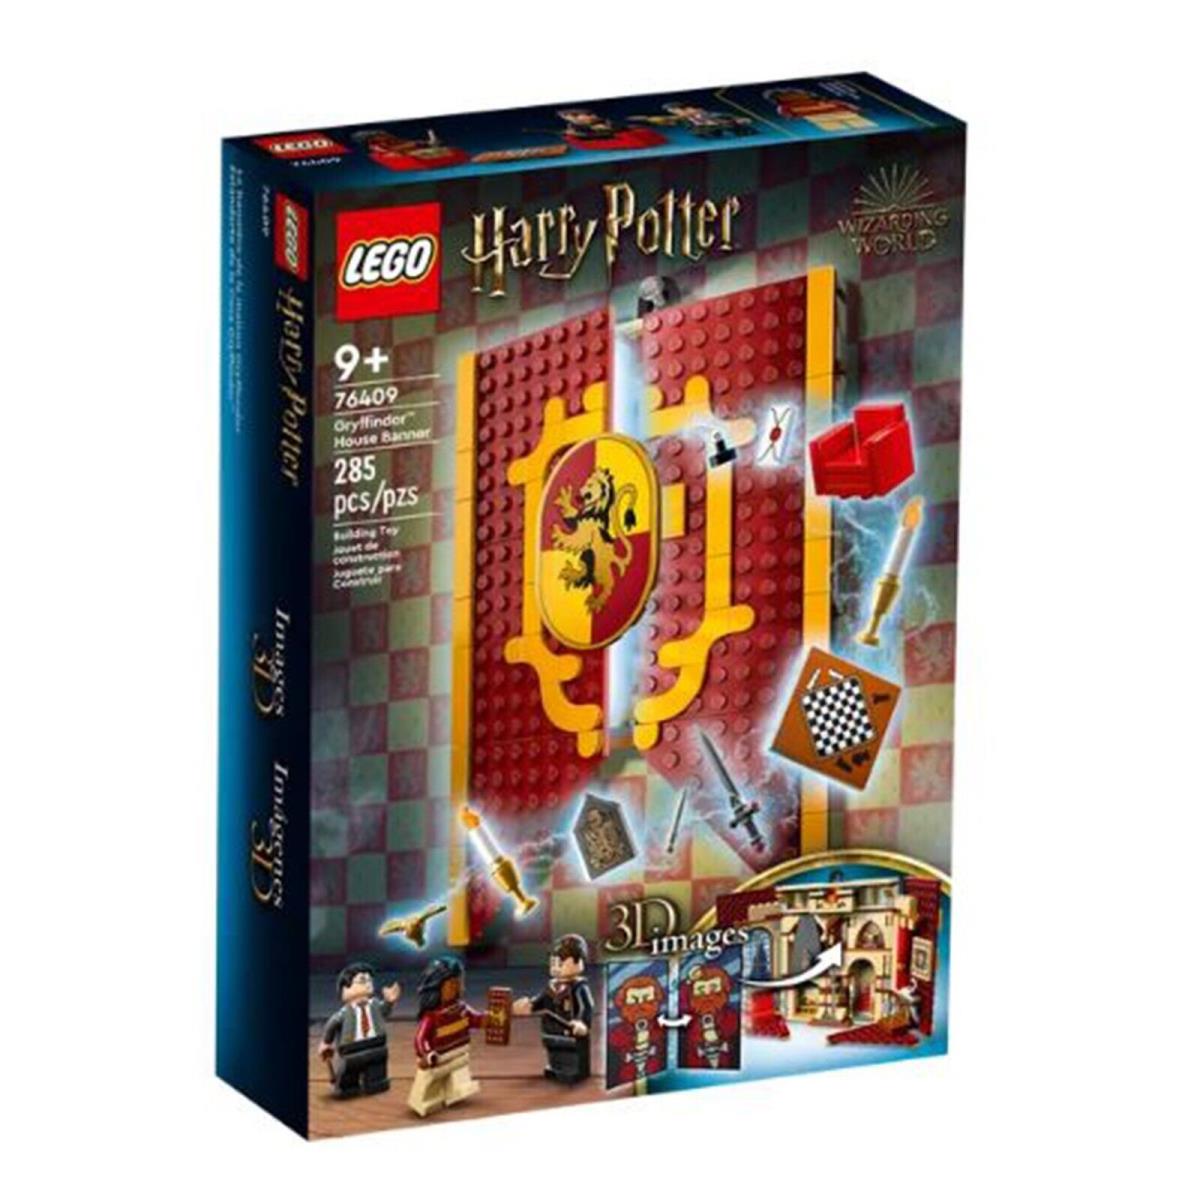 Lego Harry Potter Gryffindor House Banner Building Set 76409